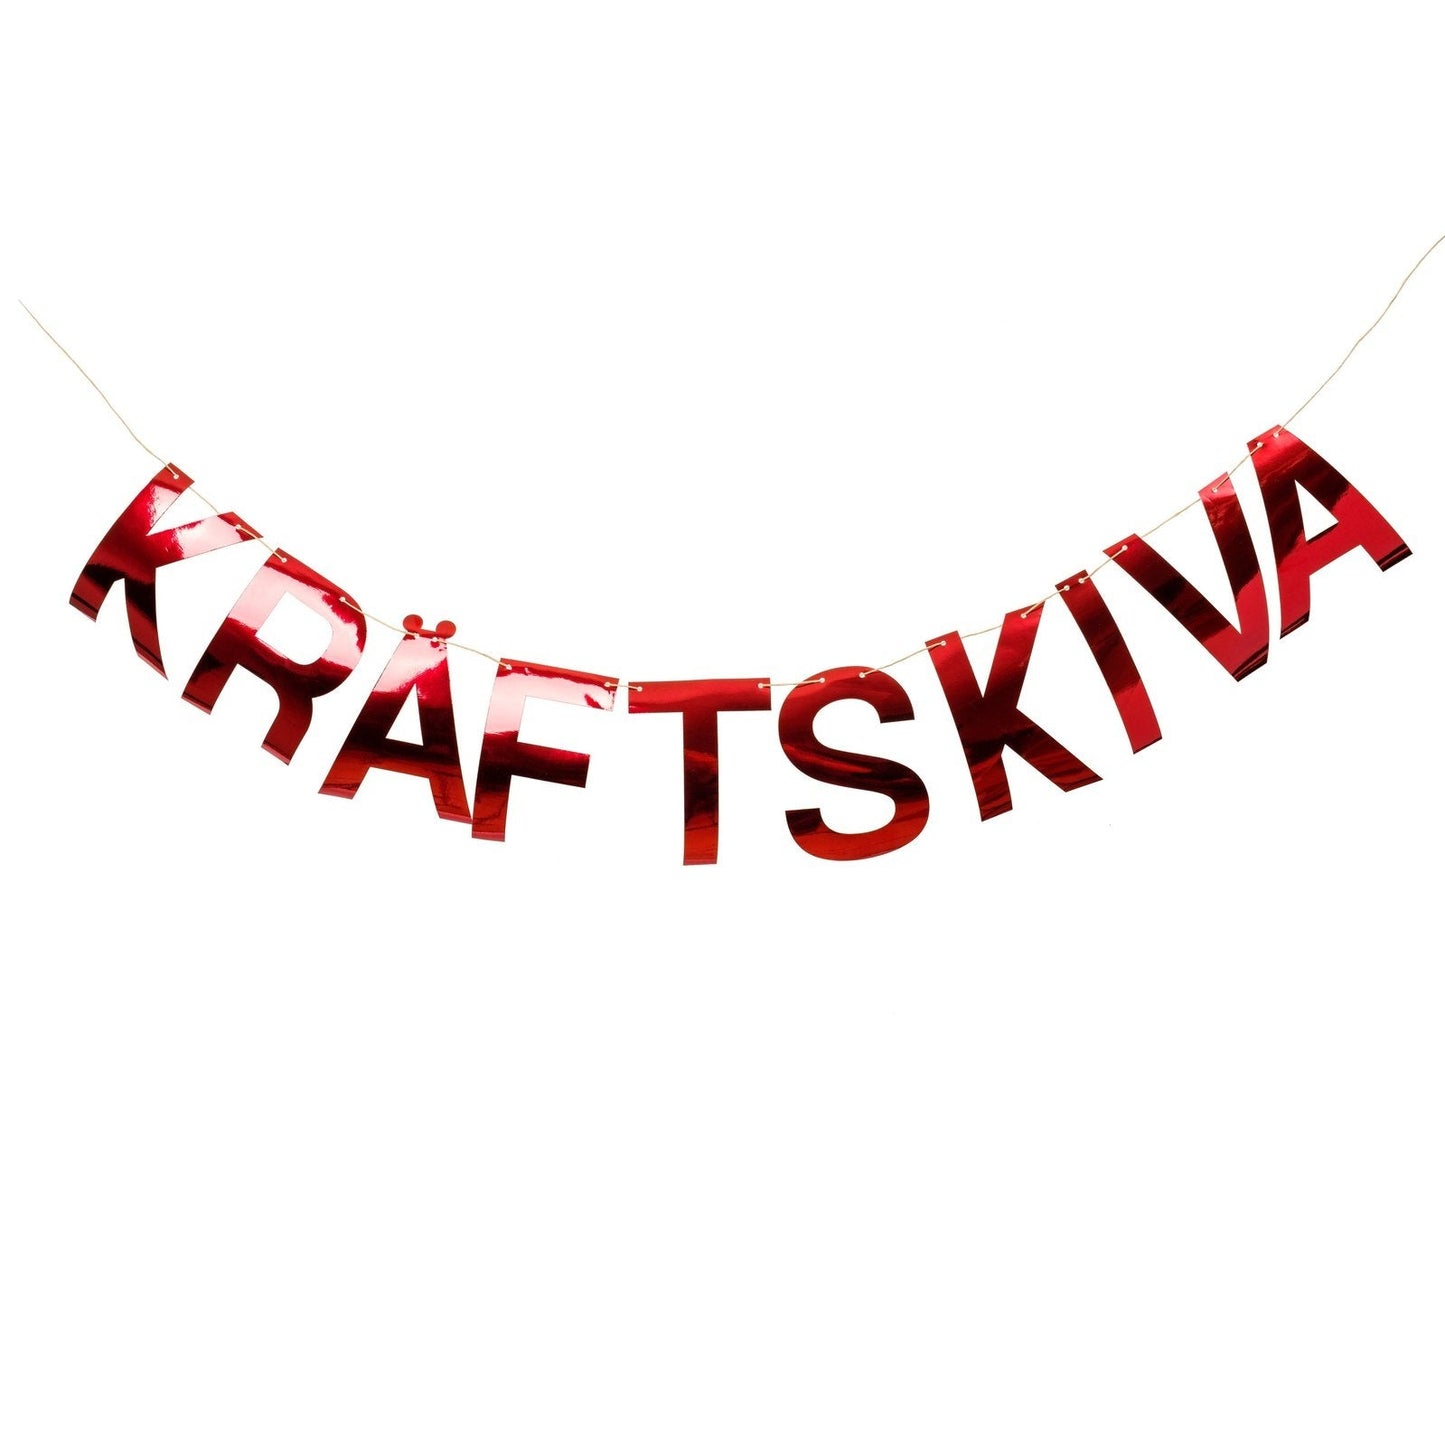 Banner "Kräftkiva", 16cm high and 2m long - Engångsartiklar, Student, Jul, Nyår, Fest, Kalas